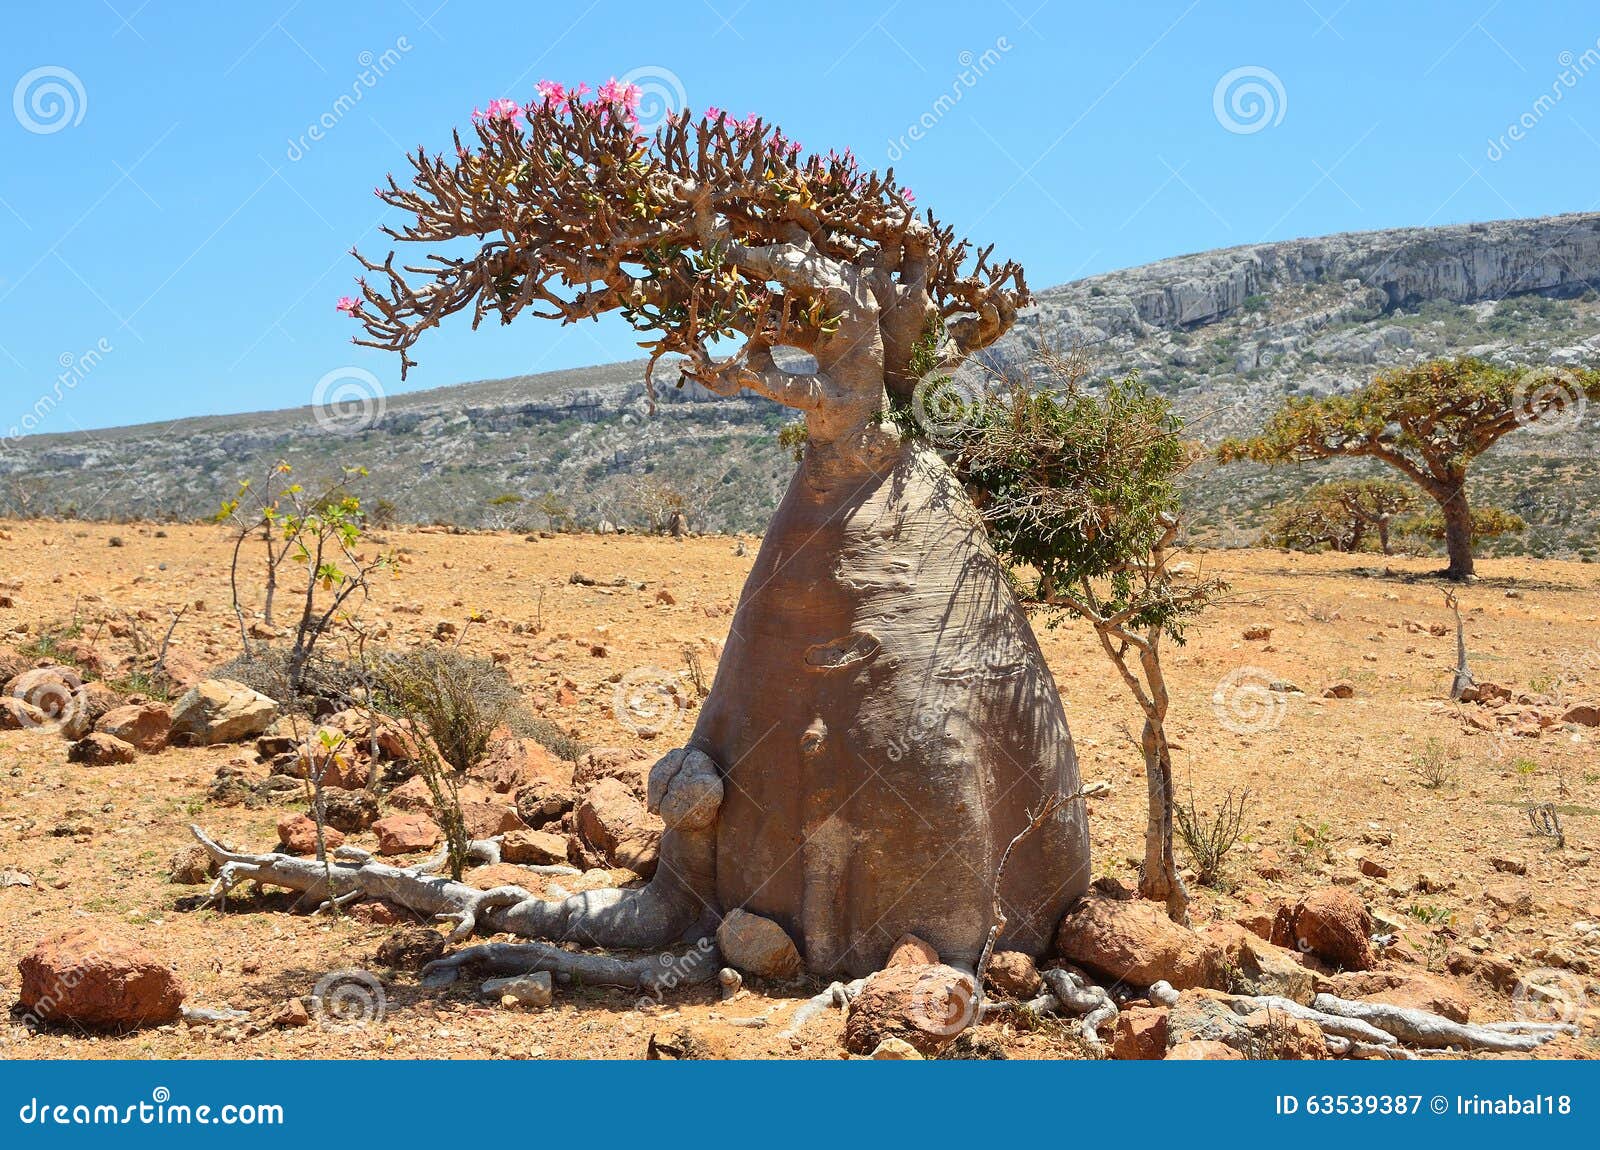 socotra yemen bottle trees desert rose adenium obesum homhil plateau 63539387